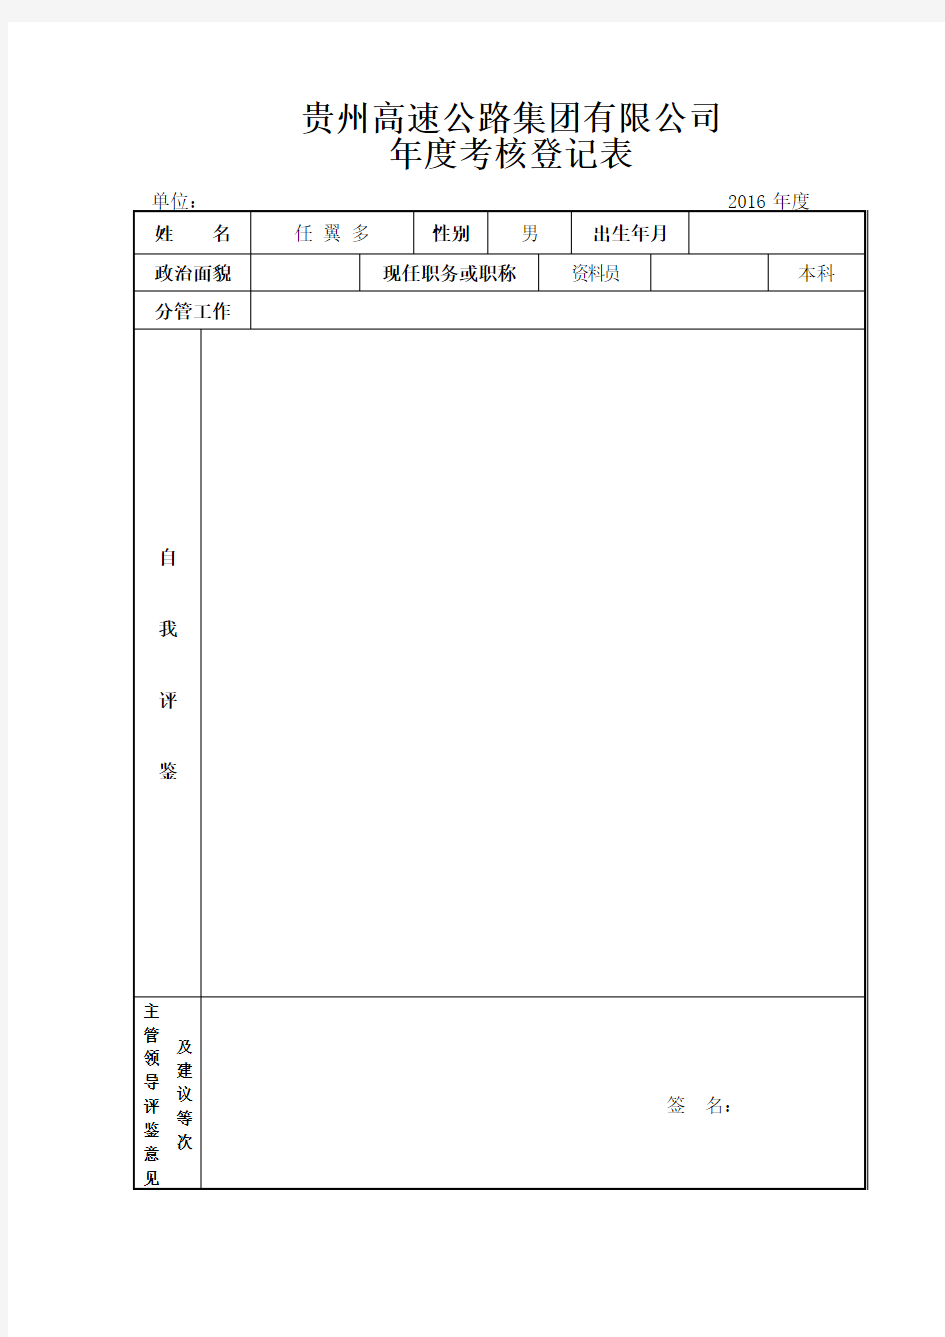 年度考核登记表(双面打印)